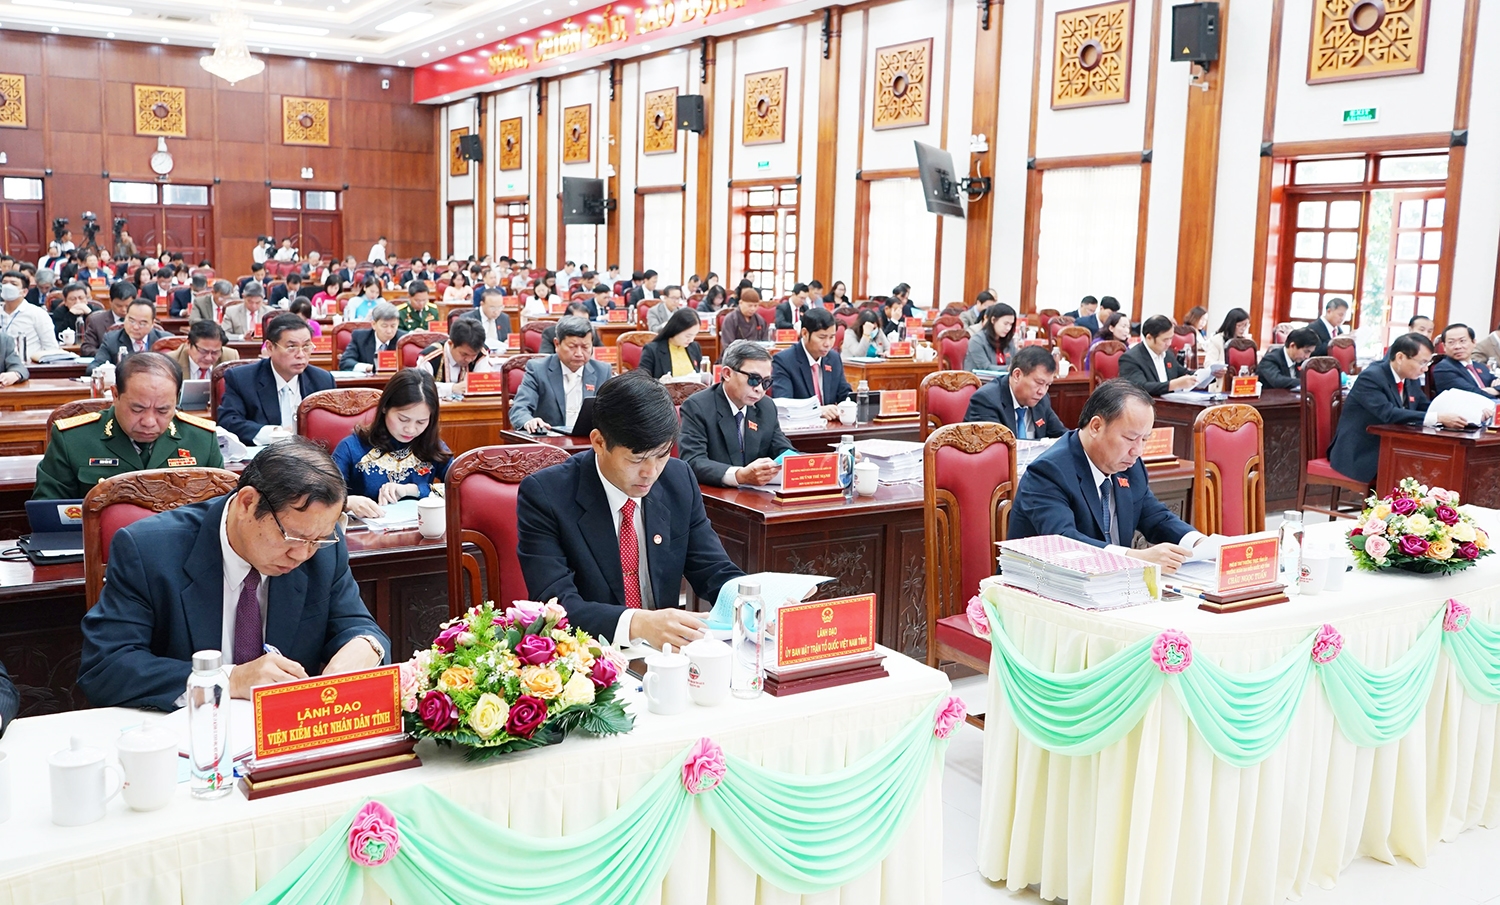 Dự kỳ họp có lãnh đạo tỉnh, các sở, ban, ngành và 69/70 đại biểu HĐND tỉnh Gia Lai